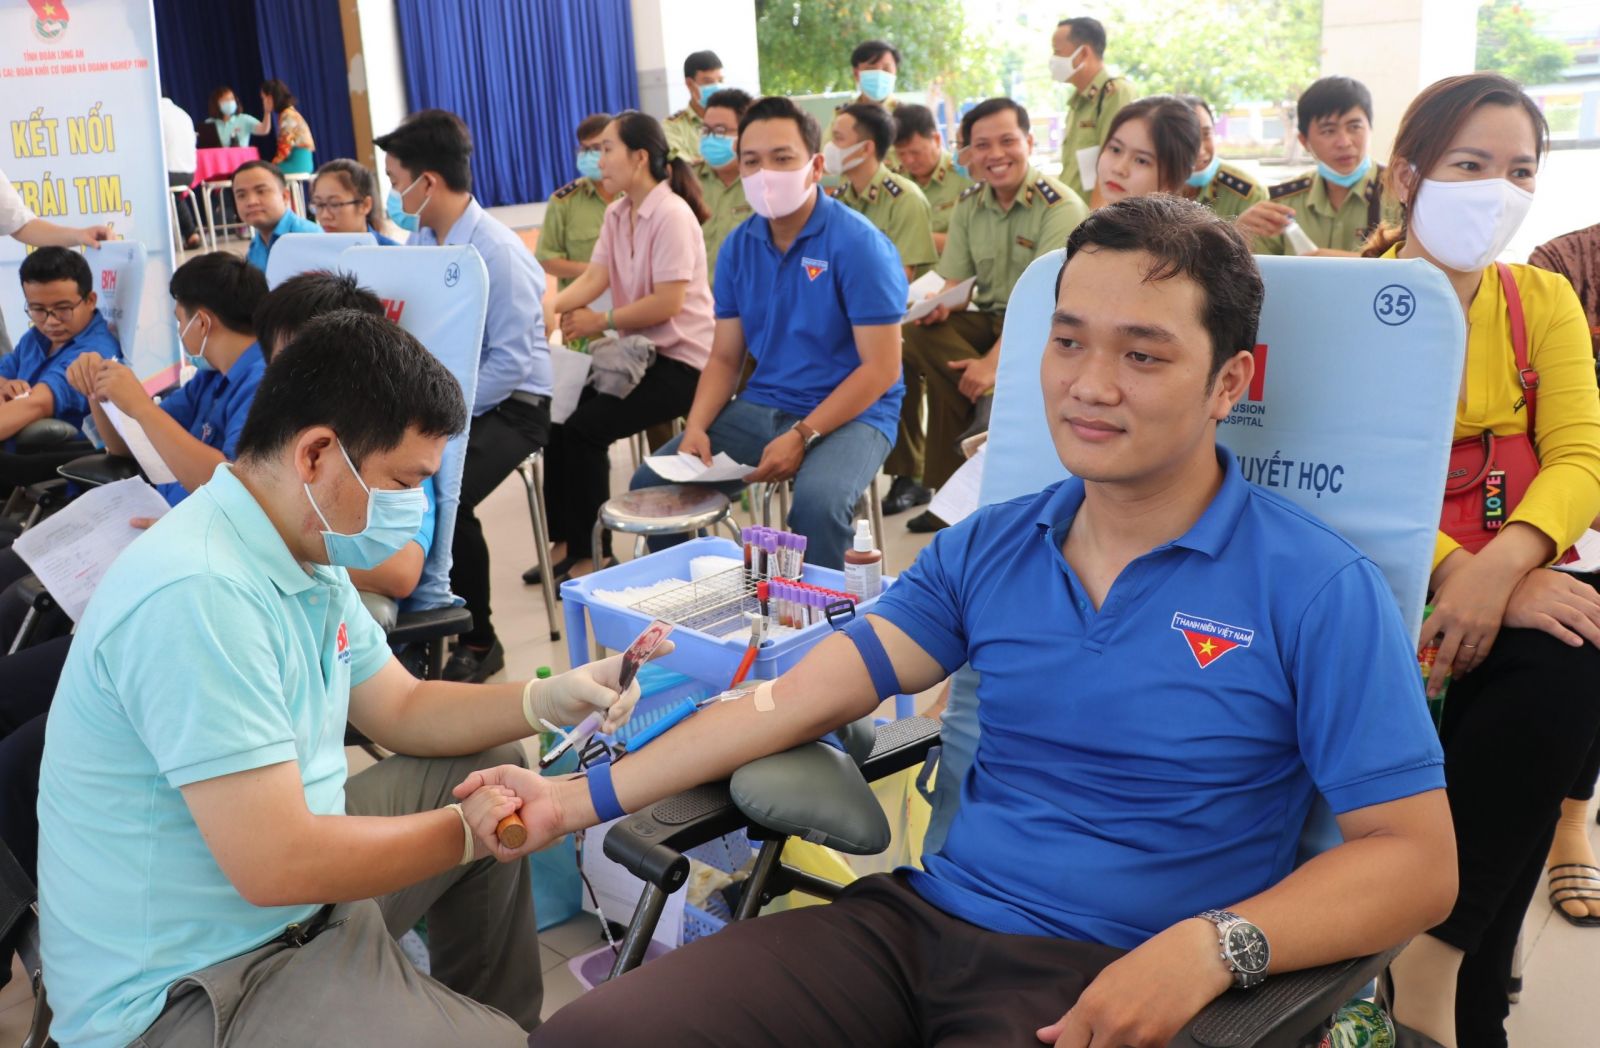 Hiến máu tình nguyện là hoạt động thể hiện truyền thống tương thân, tương ái tốt đẹp của dân tộc